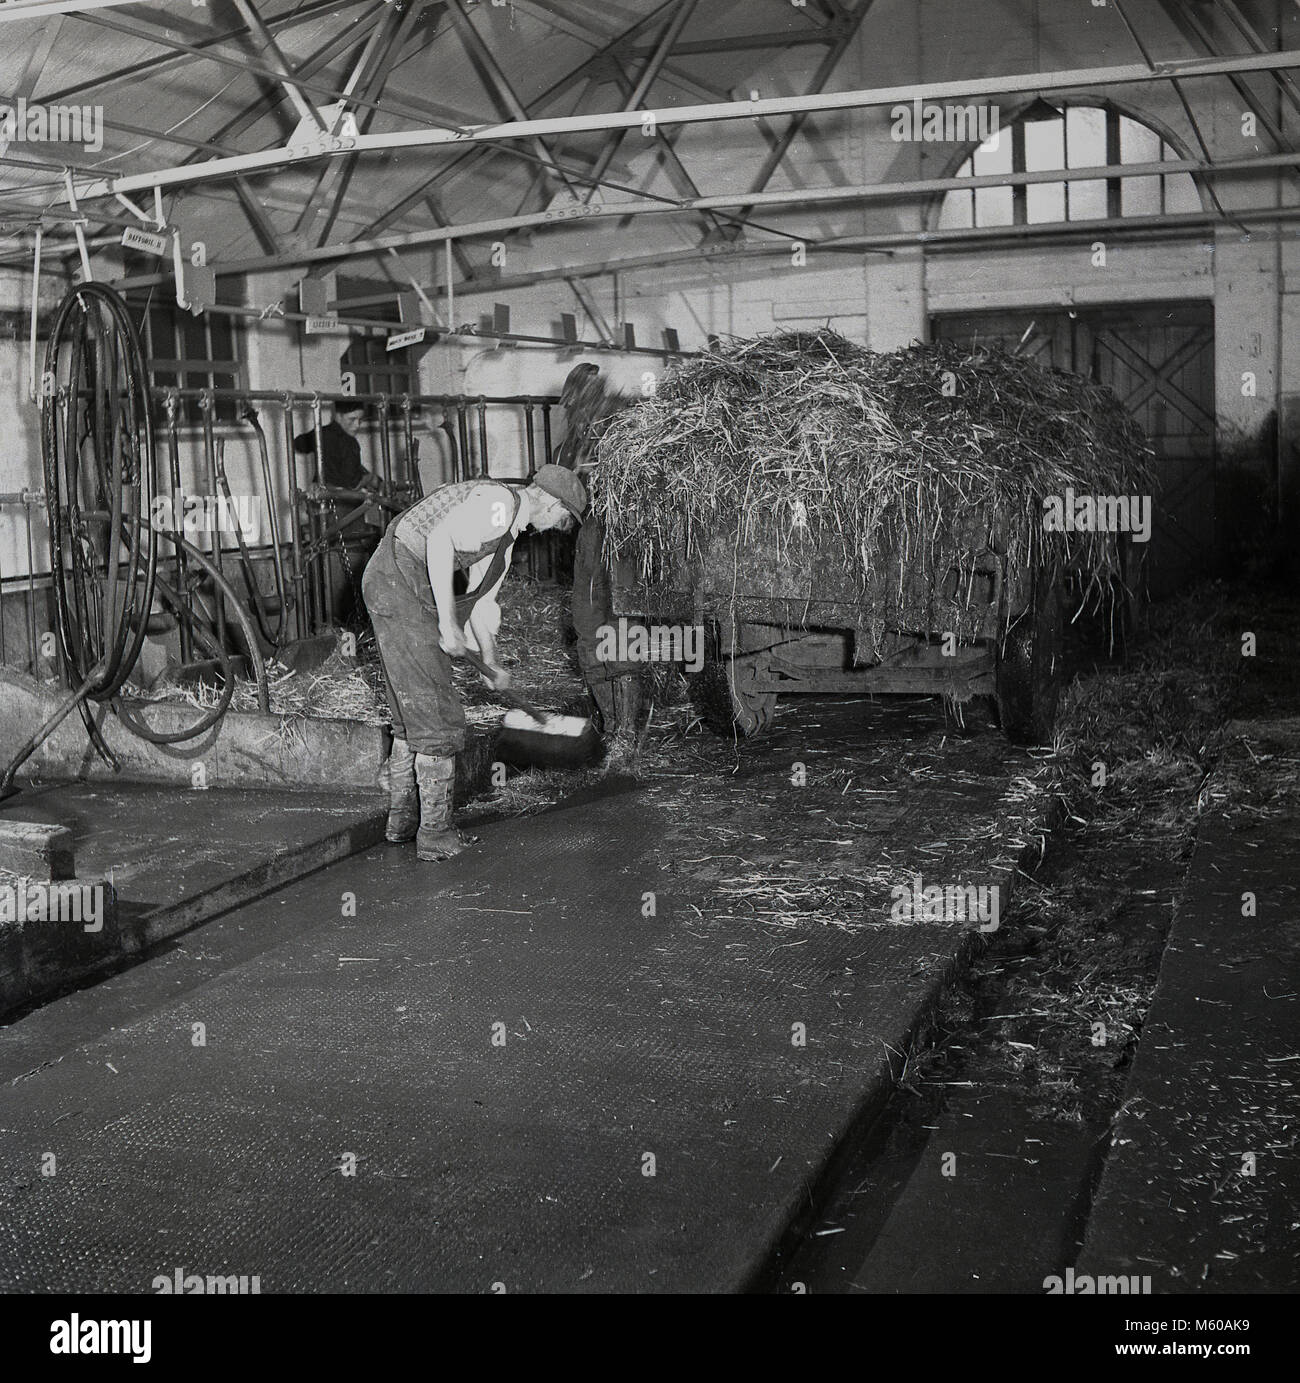 1950, historische, junge Landwirte mucking, Reinigen der Rinder Stroh in einer Scheune, in einen Warenkorb, England, Großbritannien Stockfoto